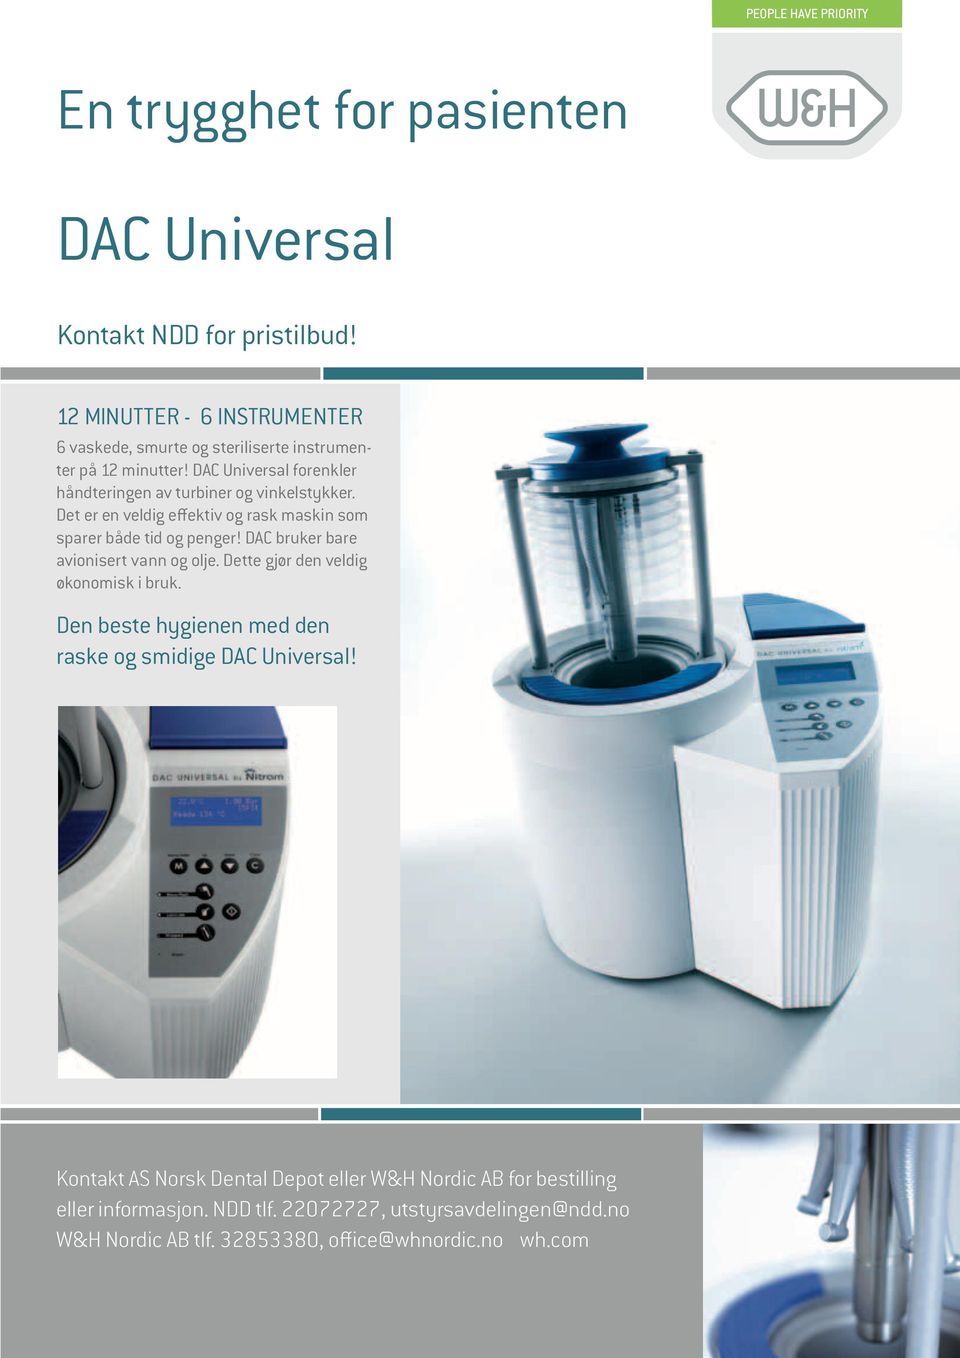 DAC Universal forenkler håndteringen av turbiner og vinkelstykker. Det er en veldig effektiv og rask maskin som sparer både tid og penger!